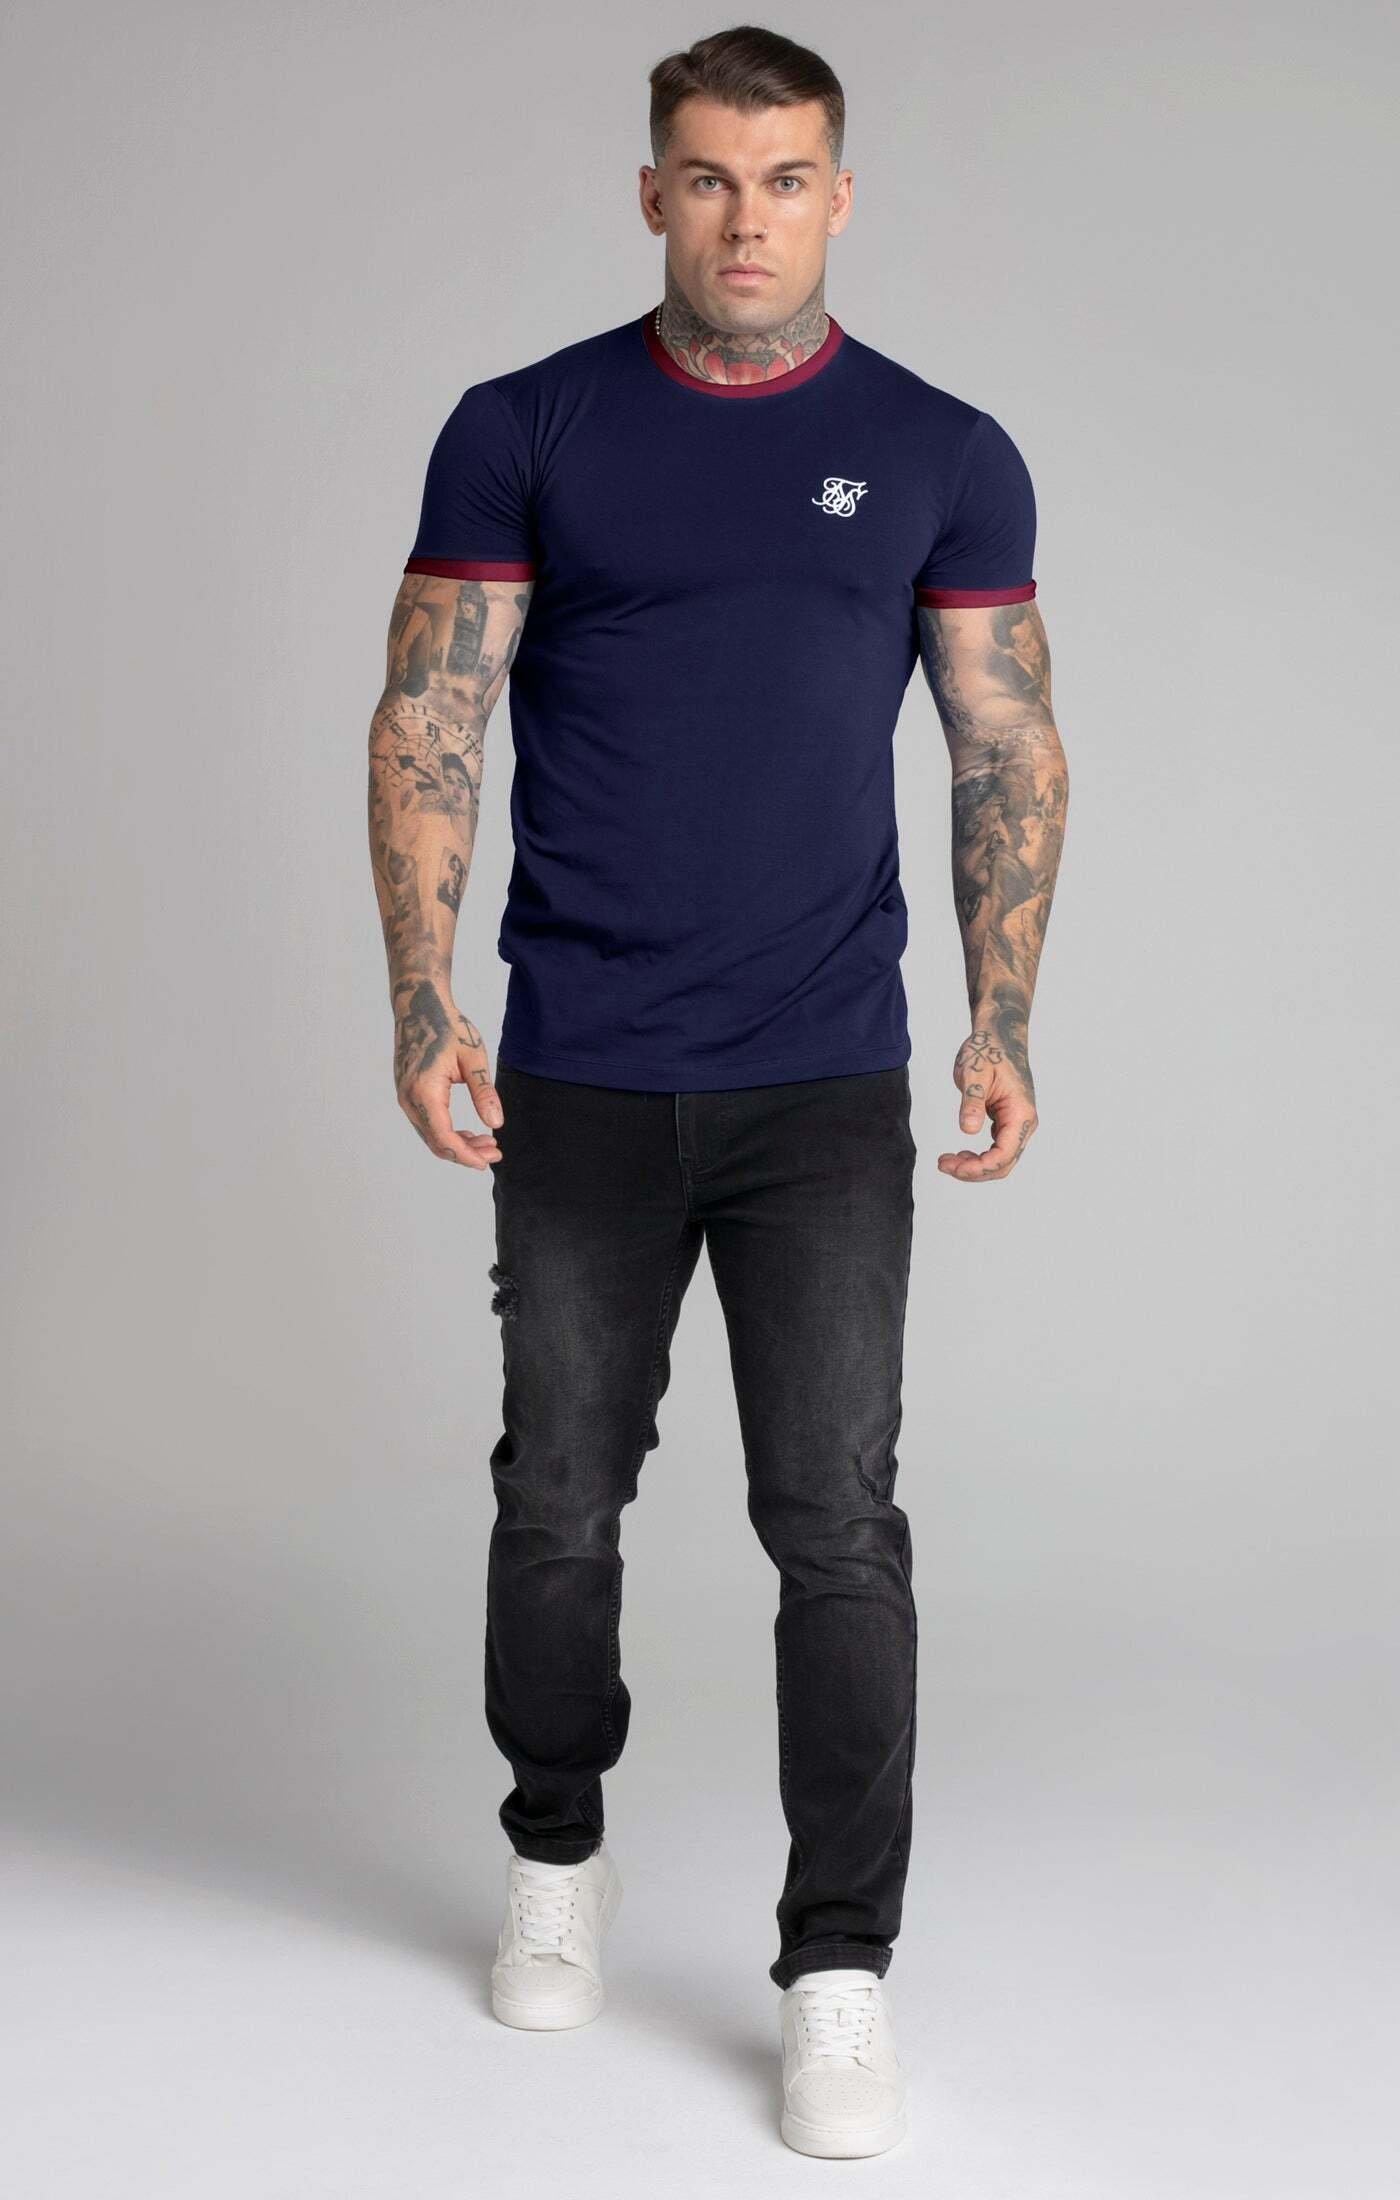 Sik Silk  T-Shirts Navy Short Sleeve Ringer T-Shirt 